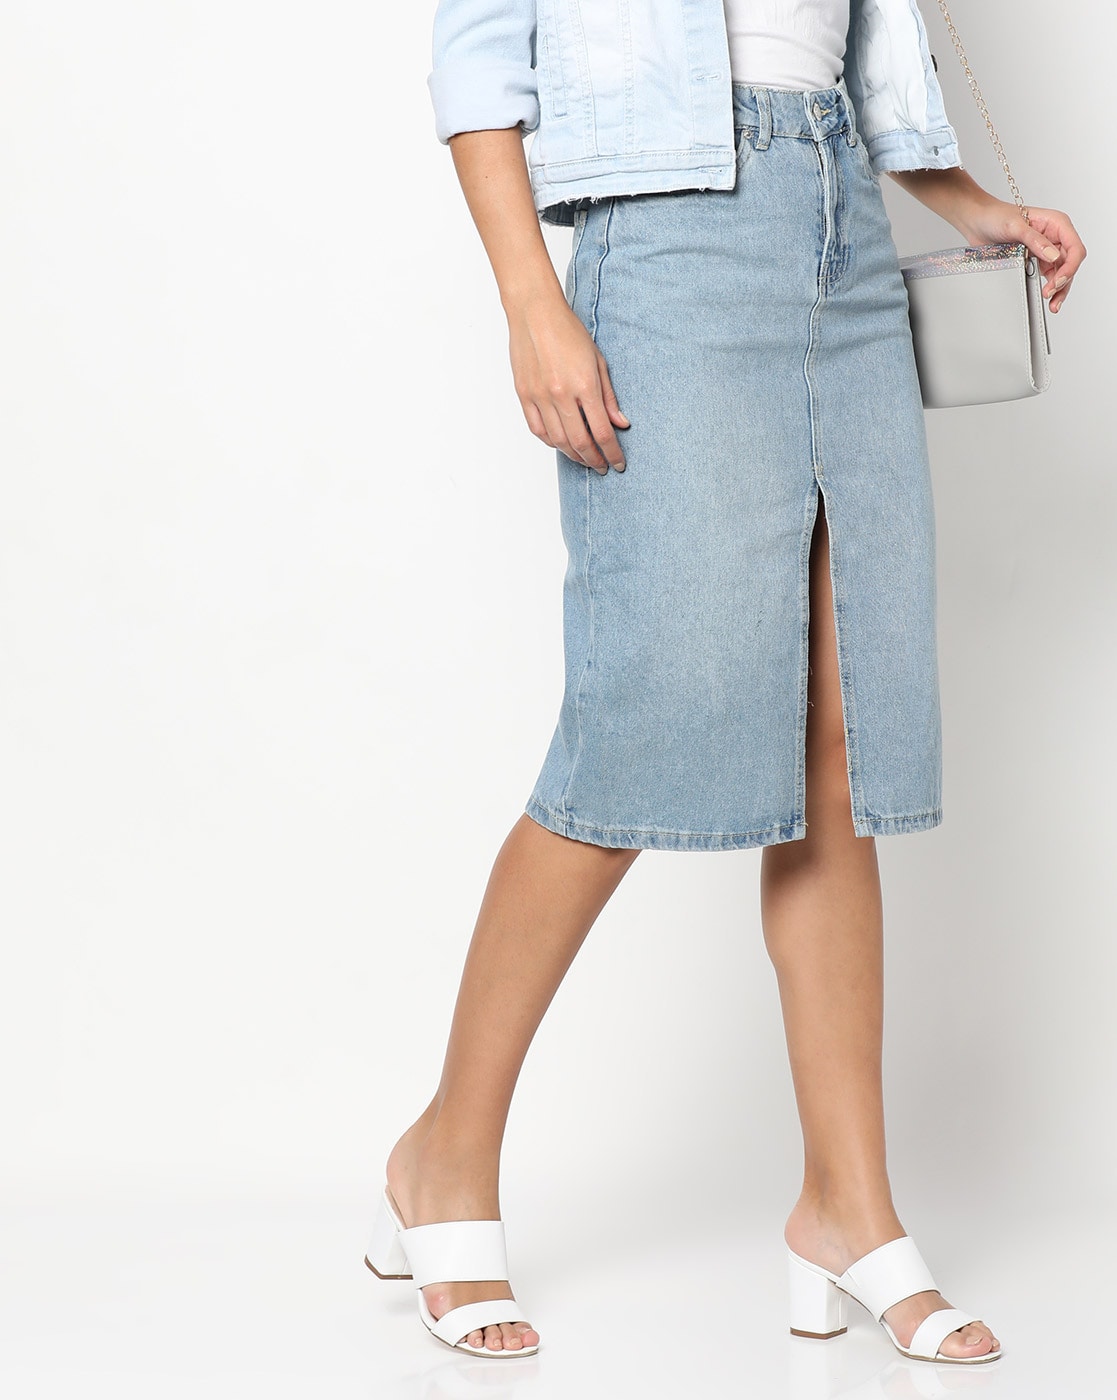 Elegant High Waist Denim Skirt For Women - A-line Slit Long Skirt